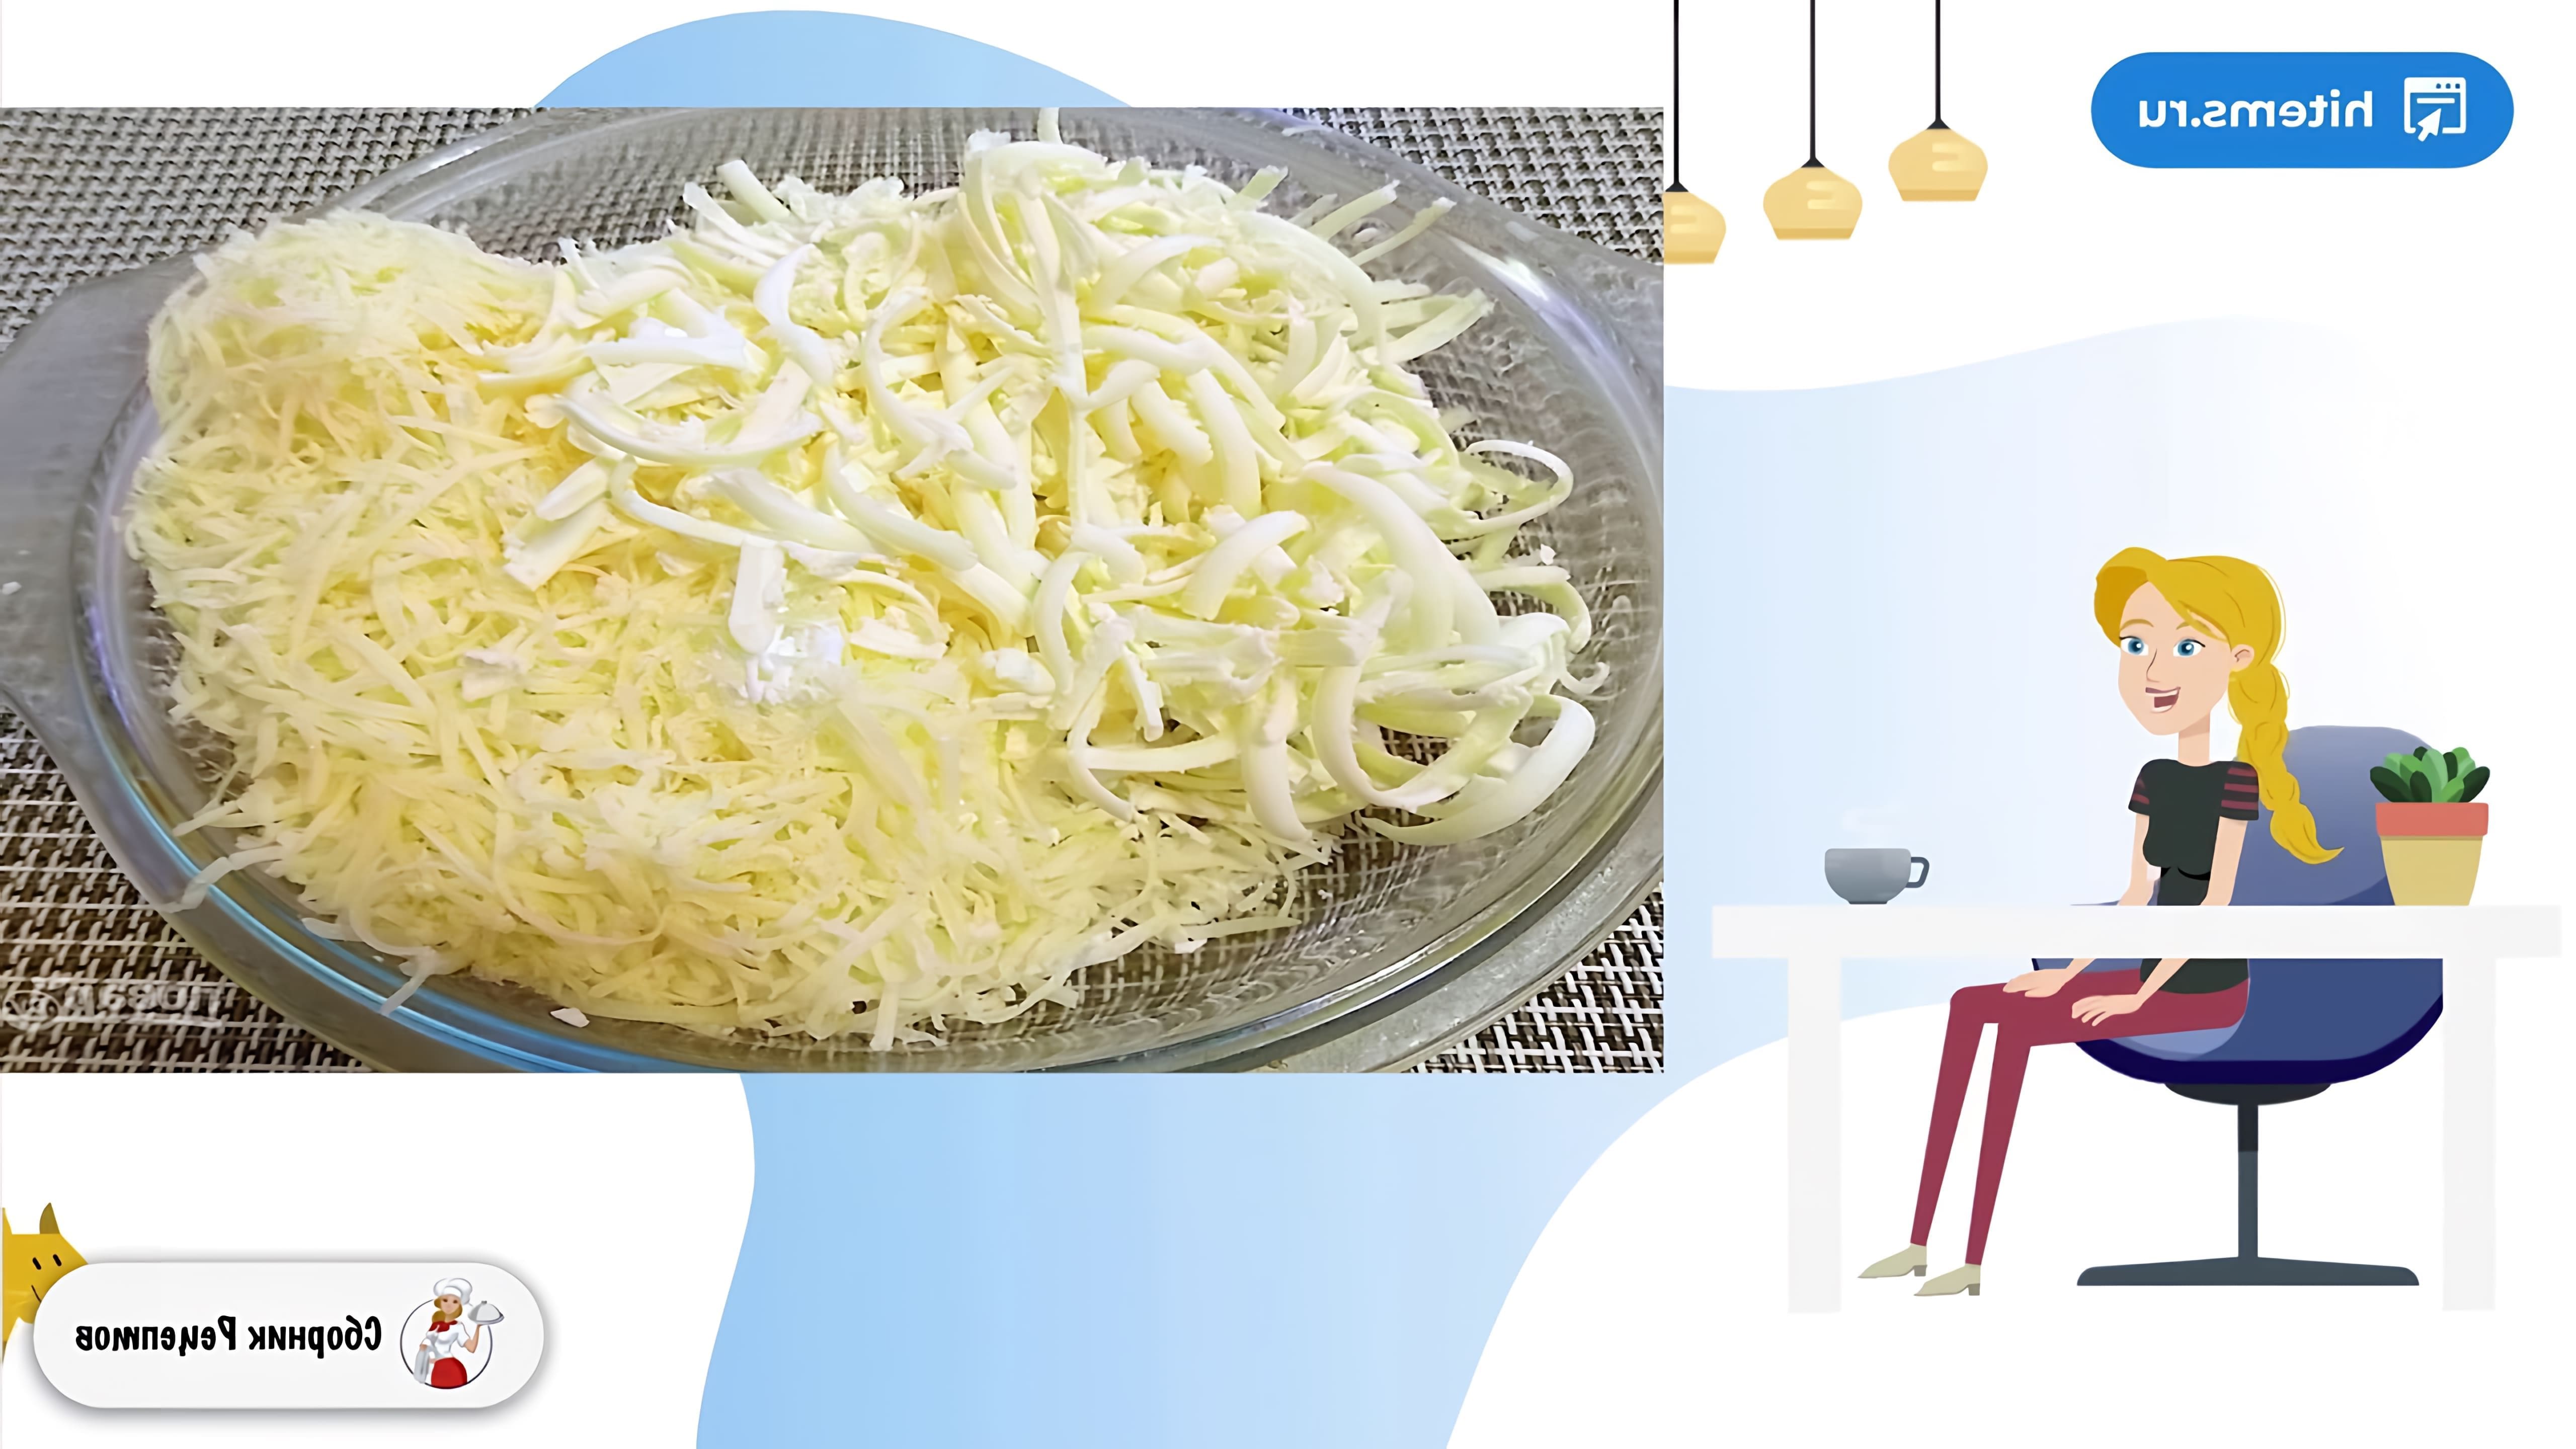 В этом видео демонстрируется рецепт приготовления котлет "Цветок папоротника" из белорусской кухни